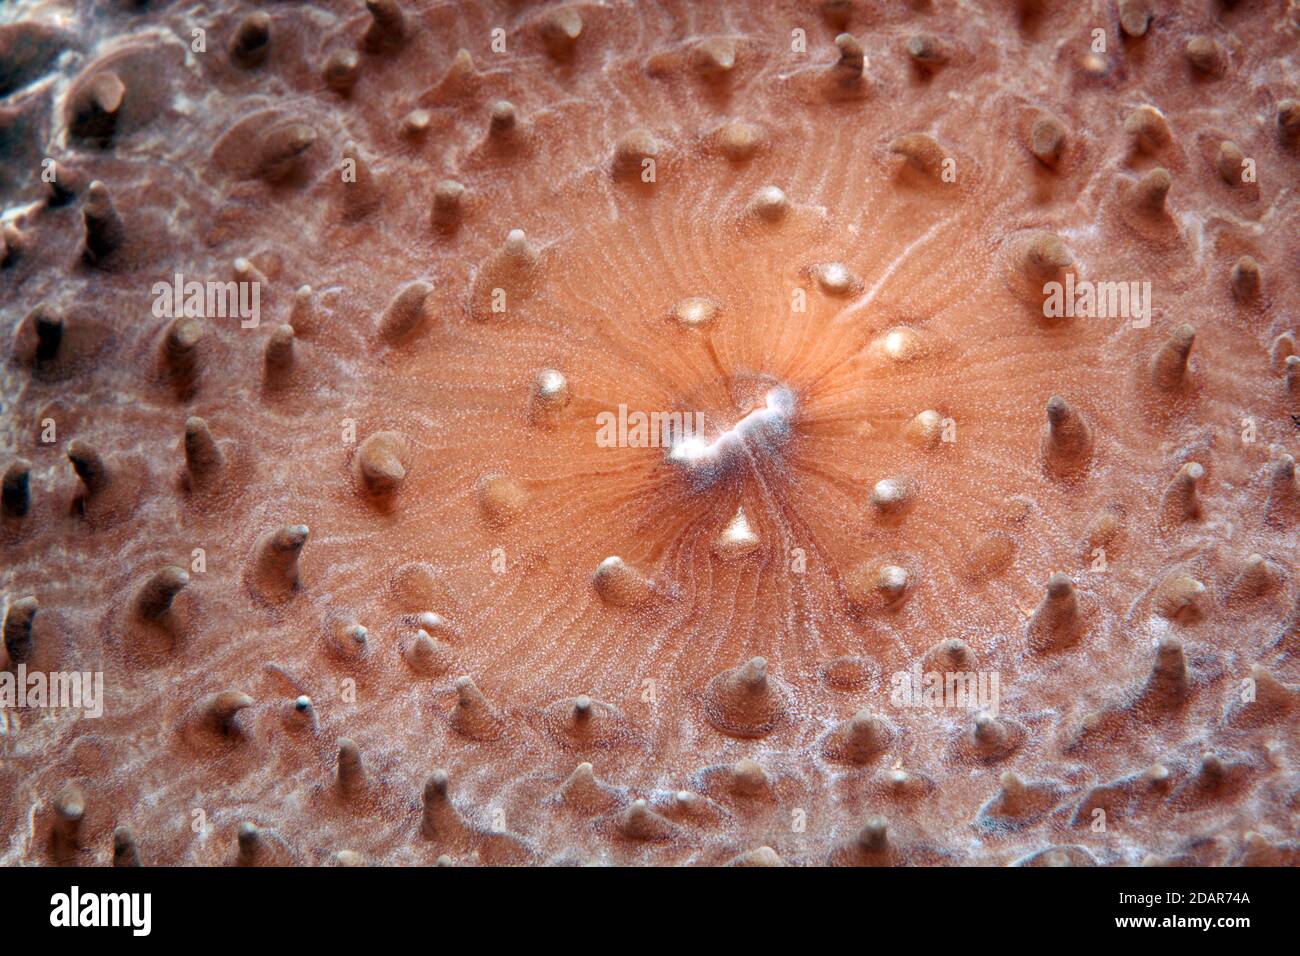 Anemone de coupe, Mushroom de coupe géant (Amplexidiscus fenestrafer), détail à la bouche, Pacifique, Grande barrière de corail, patrimoine mondial de l'UNESCO, Australie Banque D'Images